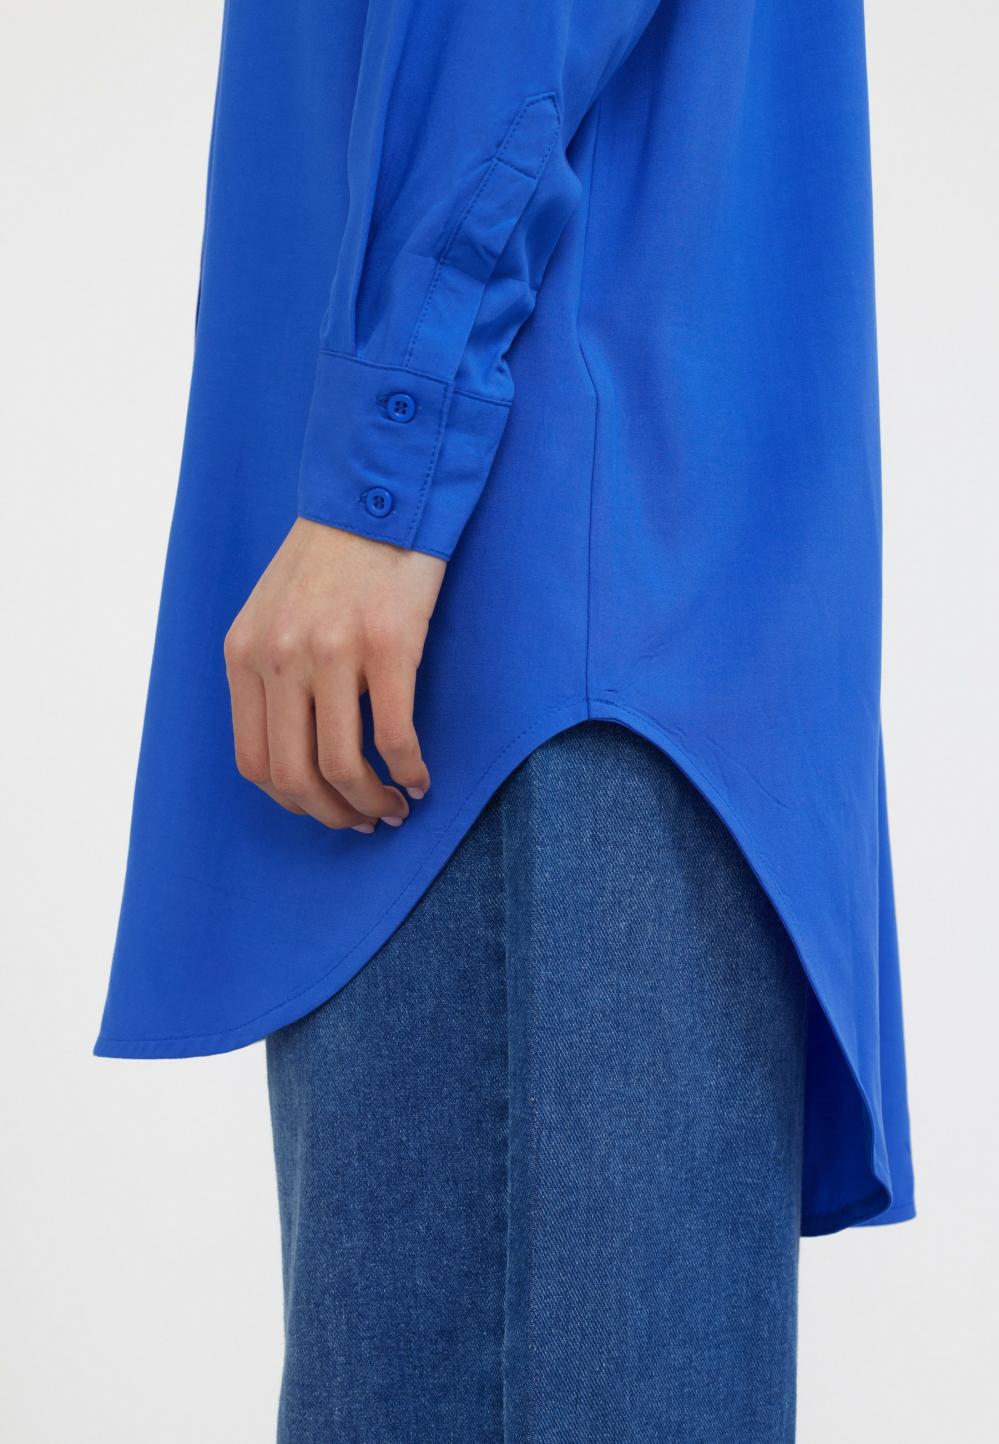 Dame SRFreedom Long Shirt Dazzling Blue | Soft Rebels Bluser